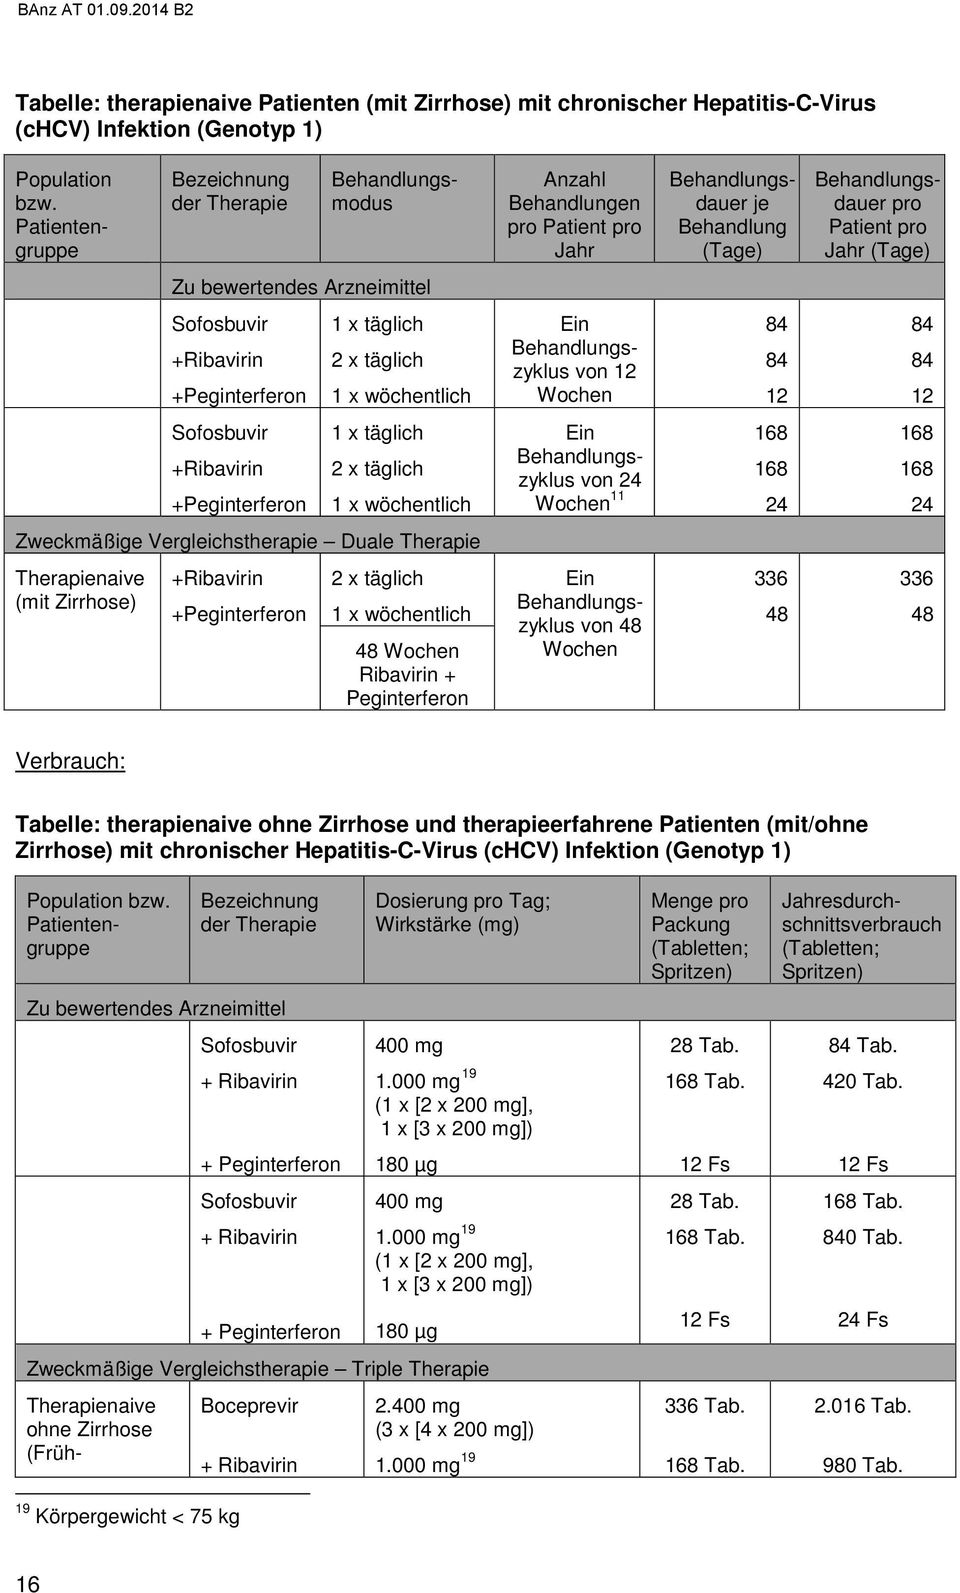 Zirrhose) + + von Verbrauch: Tabelle: therapienaive ohne Zirrhose und therapieerfahrene Patienten (mit/ohne Zirrhose) mit chronischer Hepatitis-C-Virus (chcv) Infektion (Genotyp 1) + + + + Dosierung